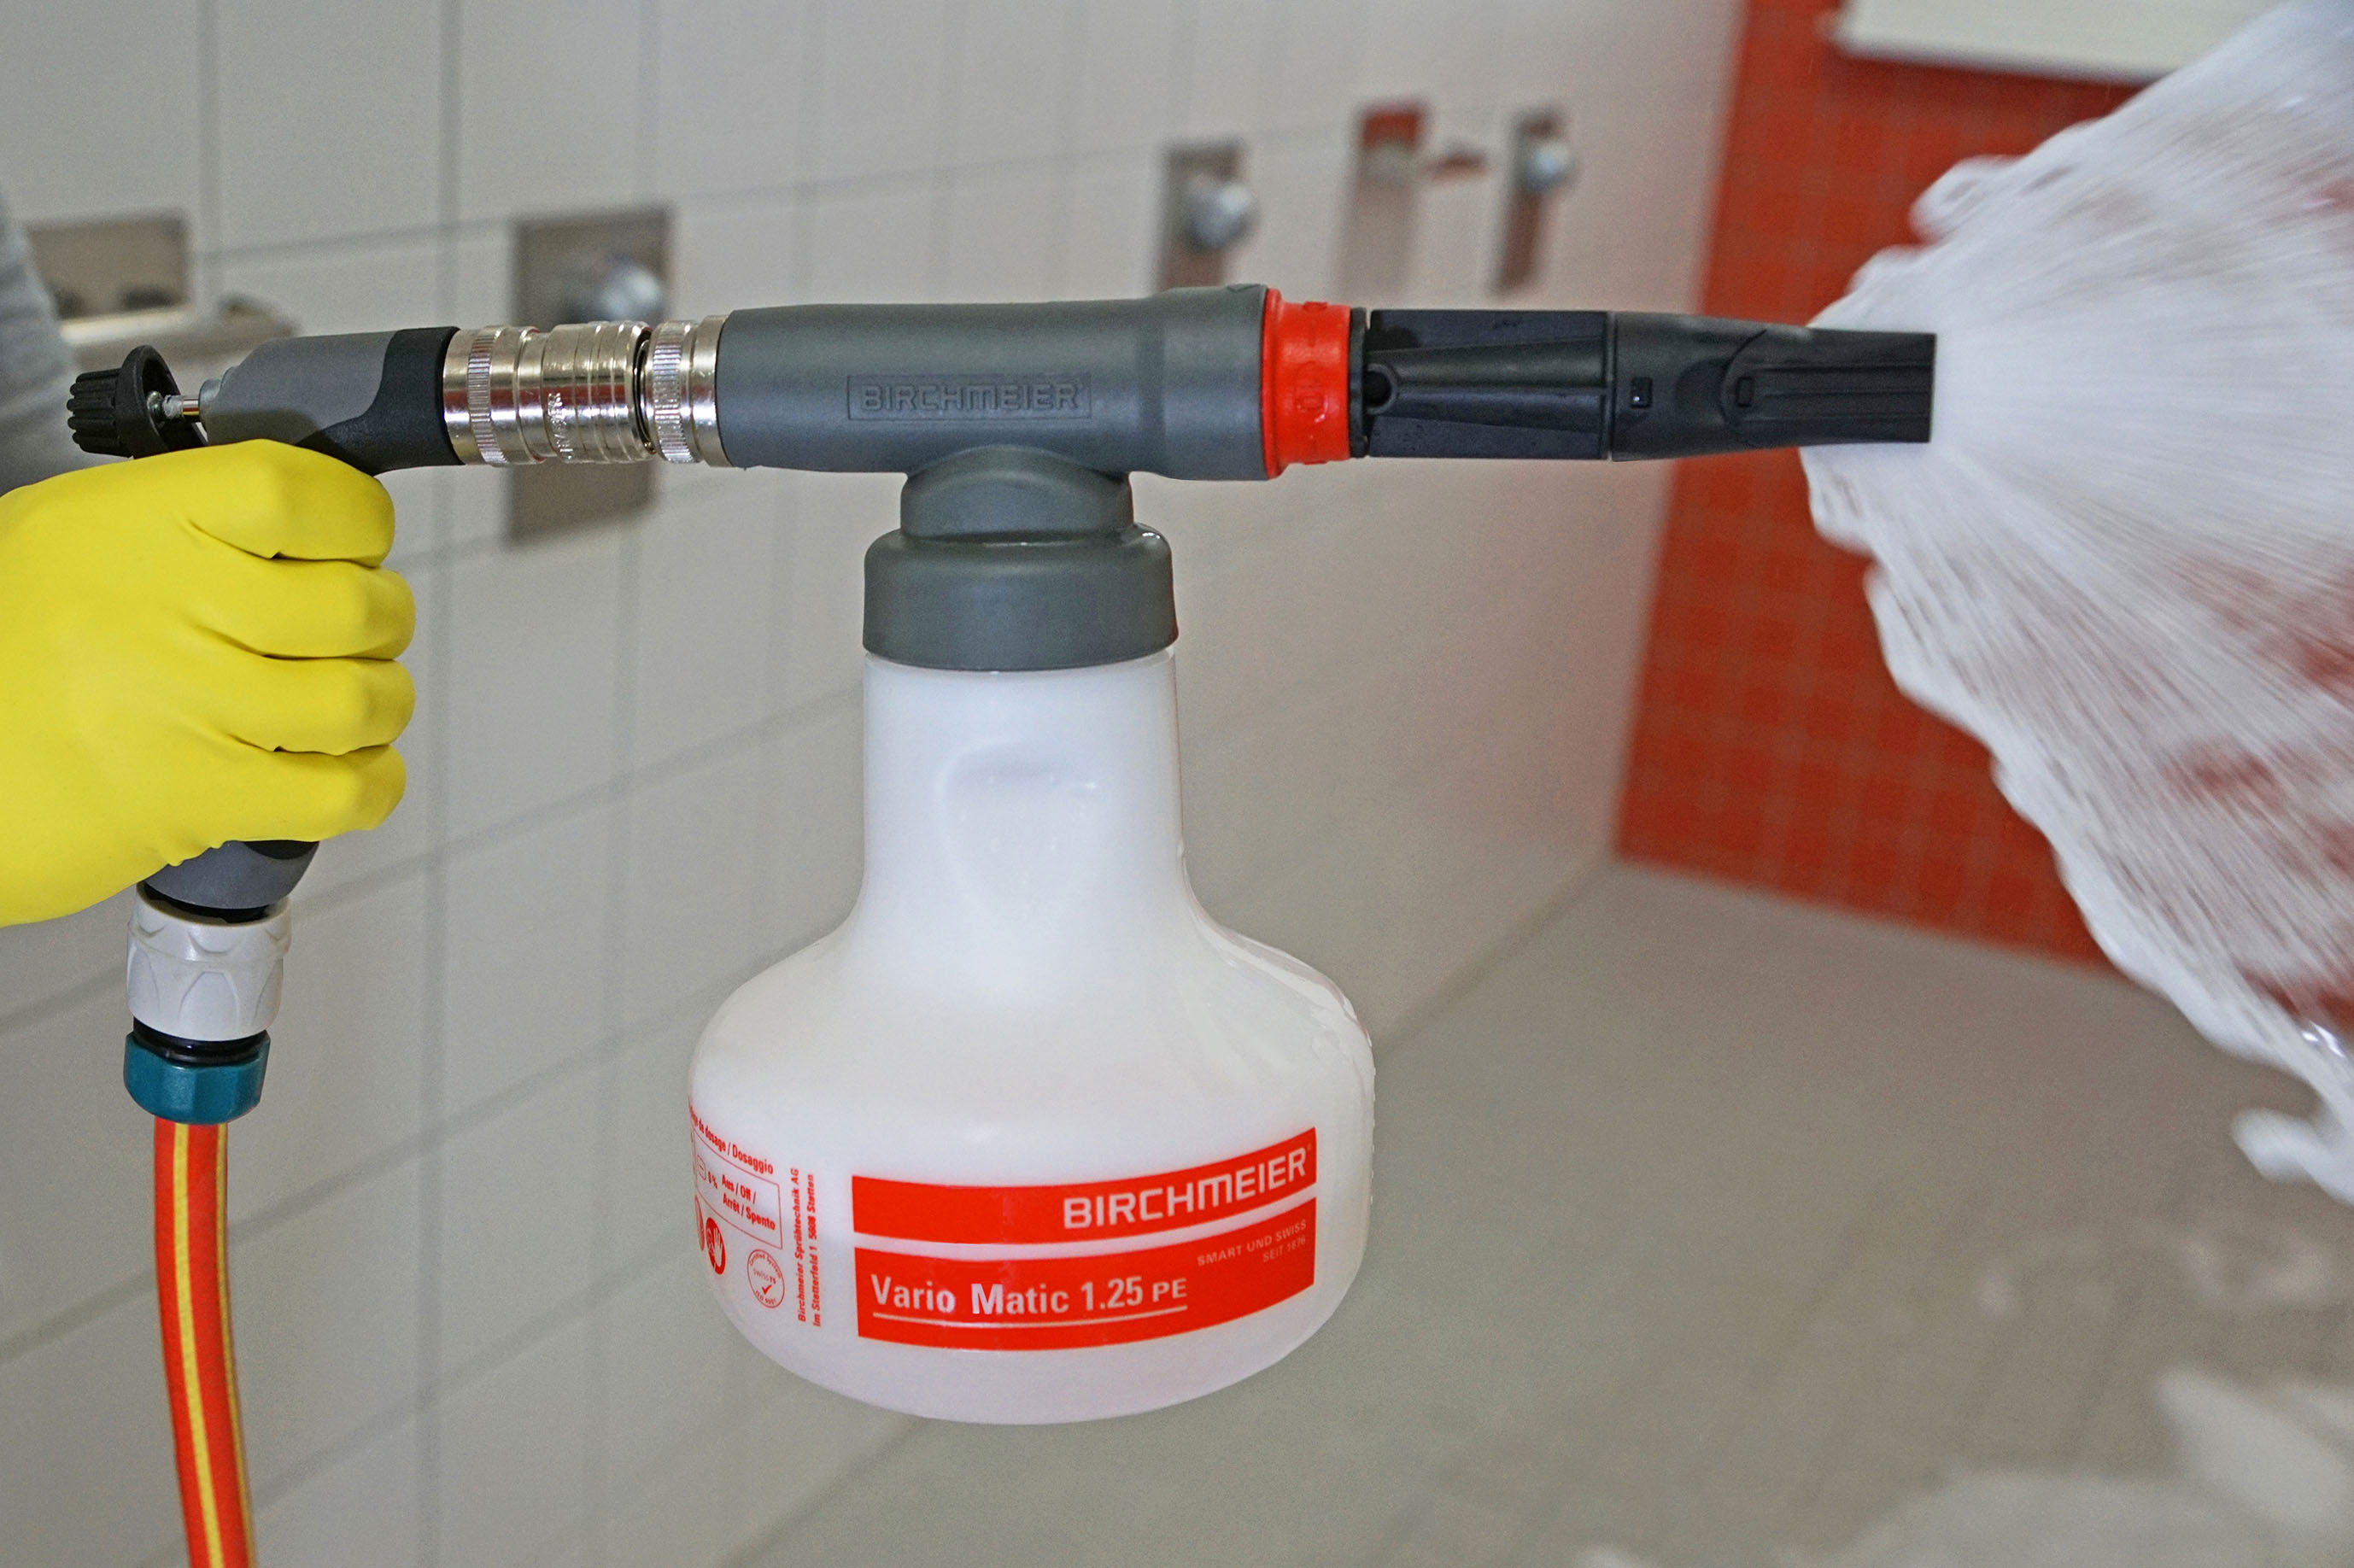 Schaumkanone Vario-Matic 1.25 PE von Birchmeier zur Reinigung, Desinfektion in sanitären Anlagen